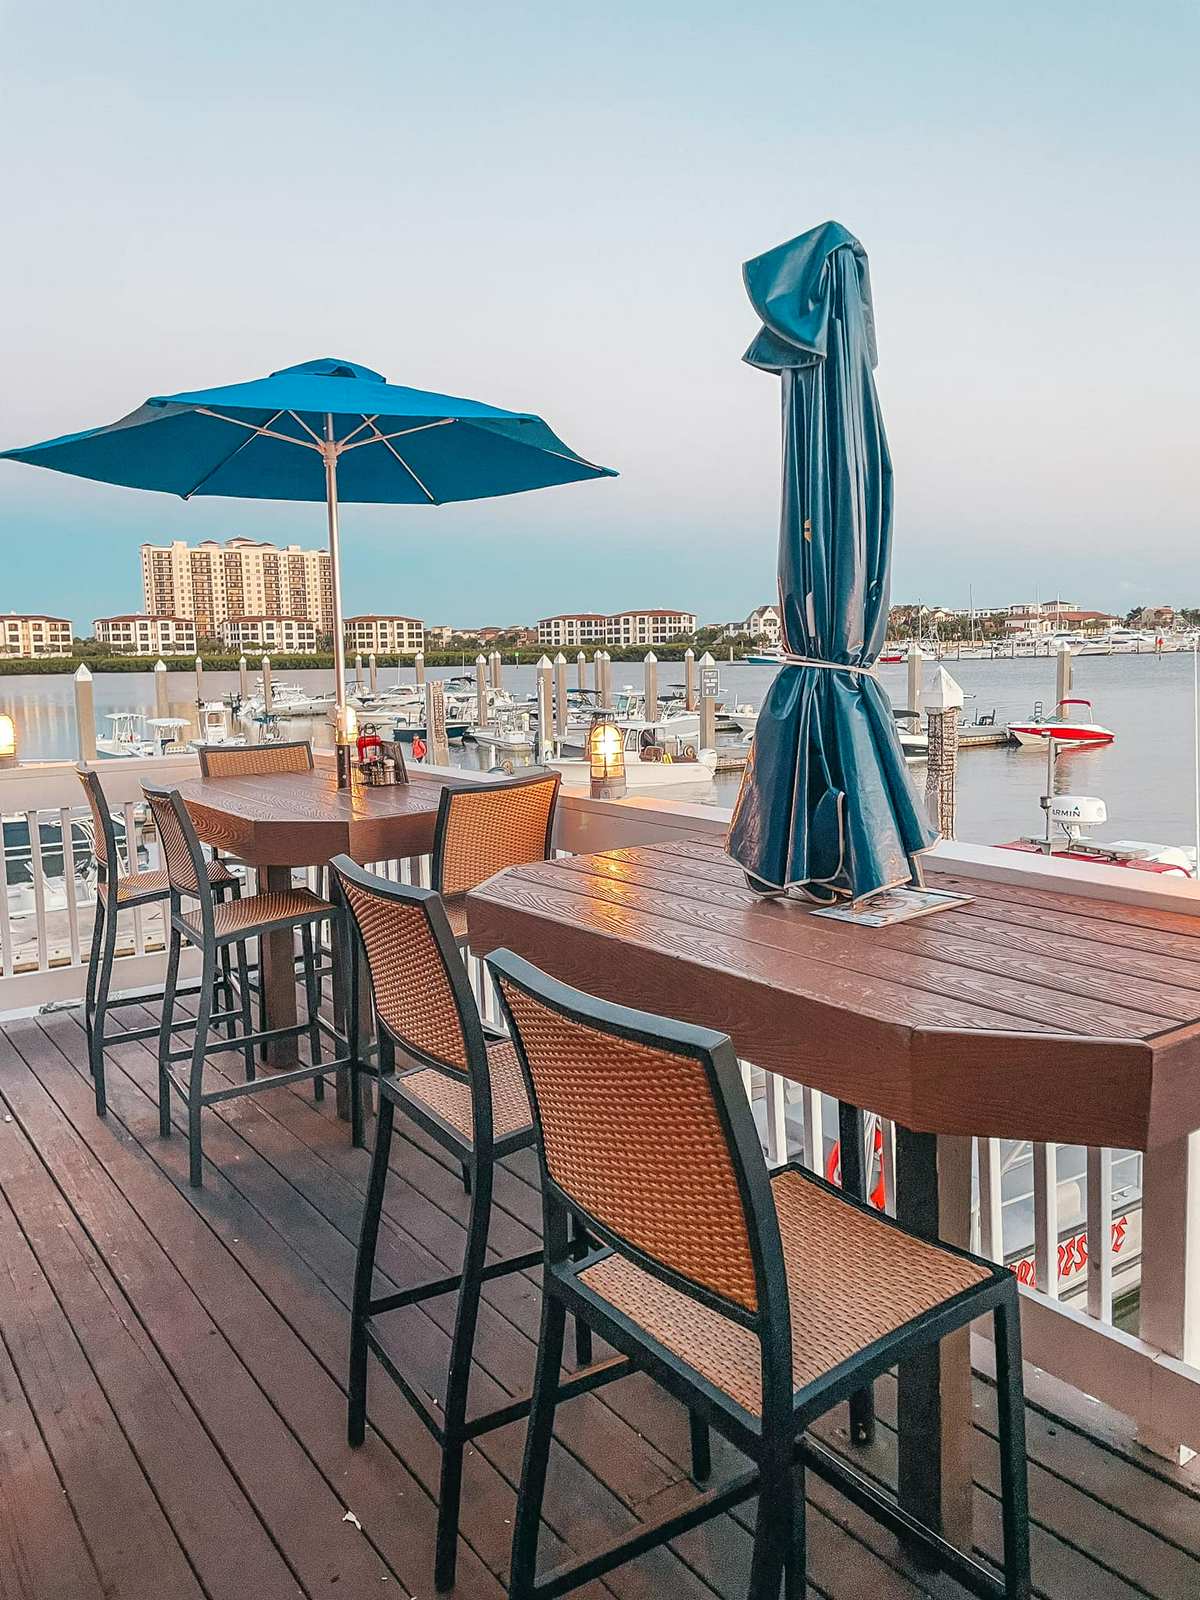 Outdoor waterfront dining at Hula Bay Club Tampa